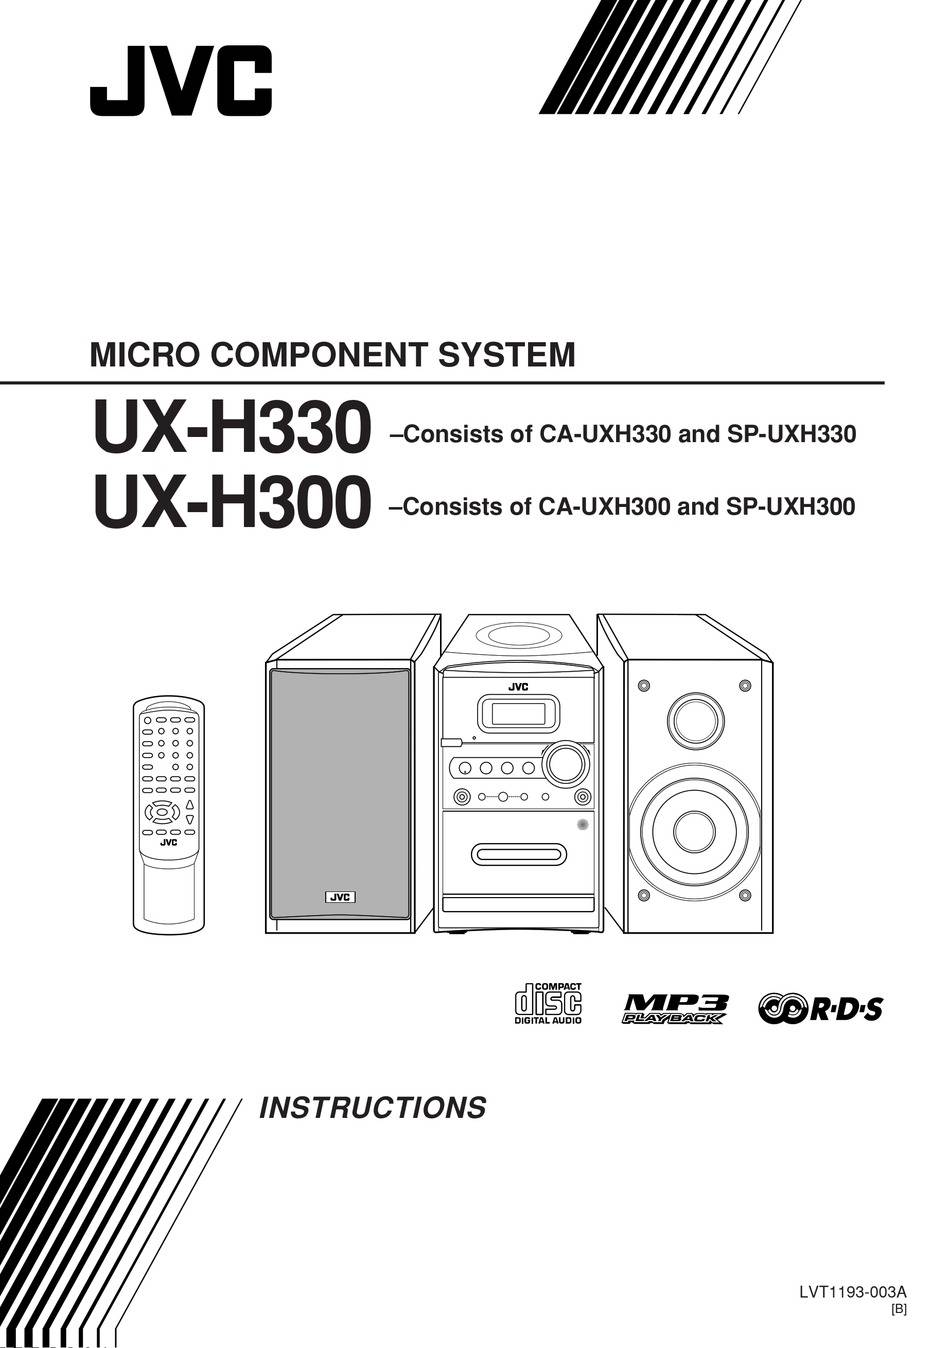 JVC UX-H300